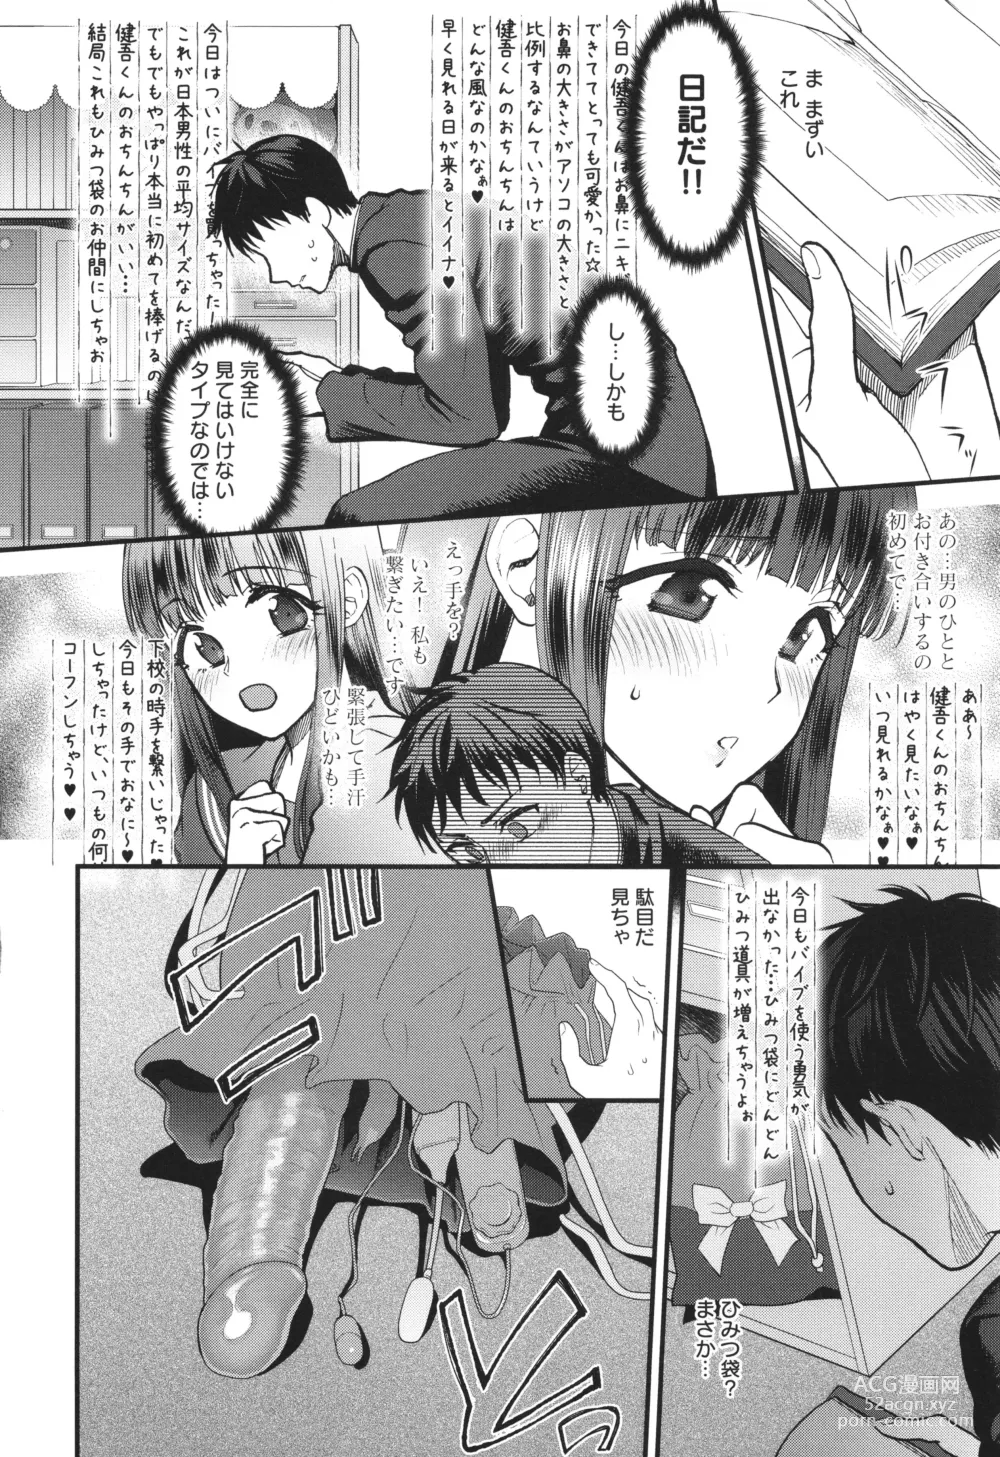 Page 205 of manga Mou Sukoshi Dake, Kono mama de